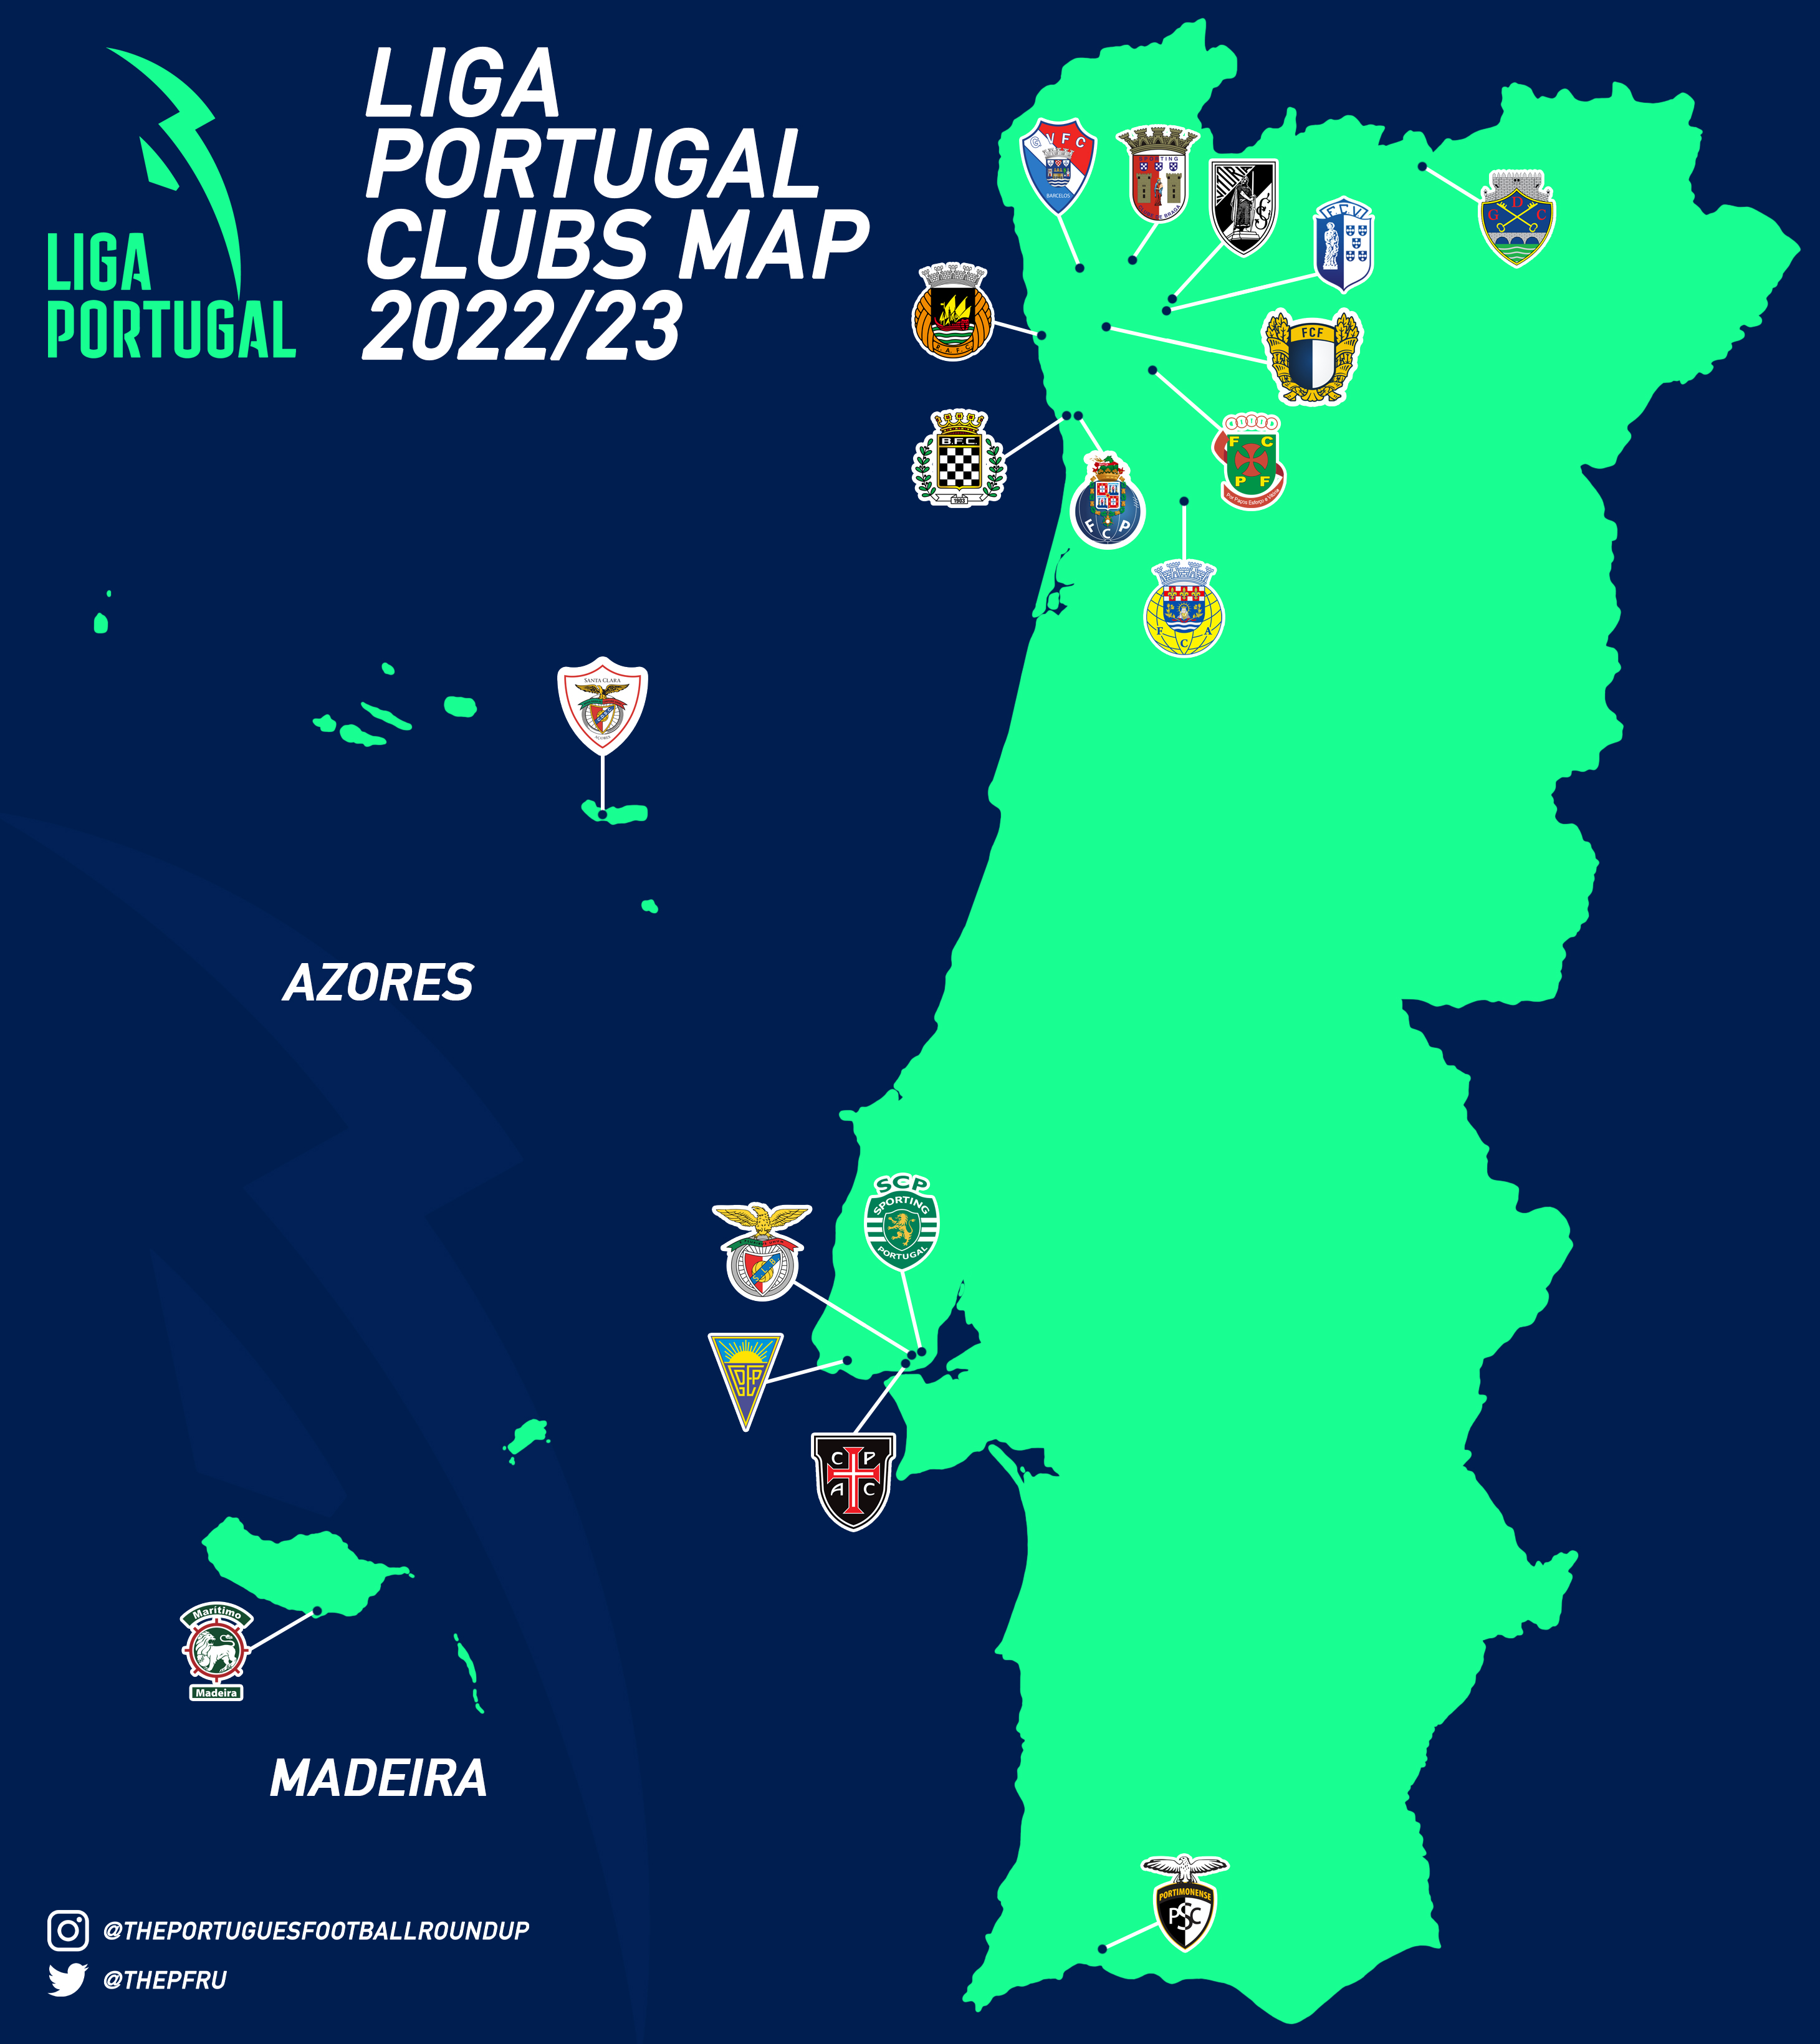 Liga Portugal on X: Pelos caminhos da #LigaPortugalbwin e  #LigaPortugalSABSEG 🚘 Em que região dos mapas está o teu clube? 📍  #LigaPortugal #criatalento #createstalent #futebolcomtalento #marcaomundo   / X